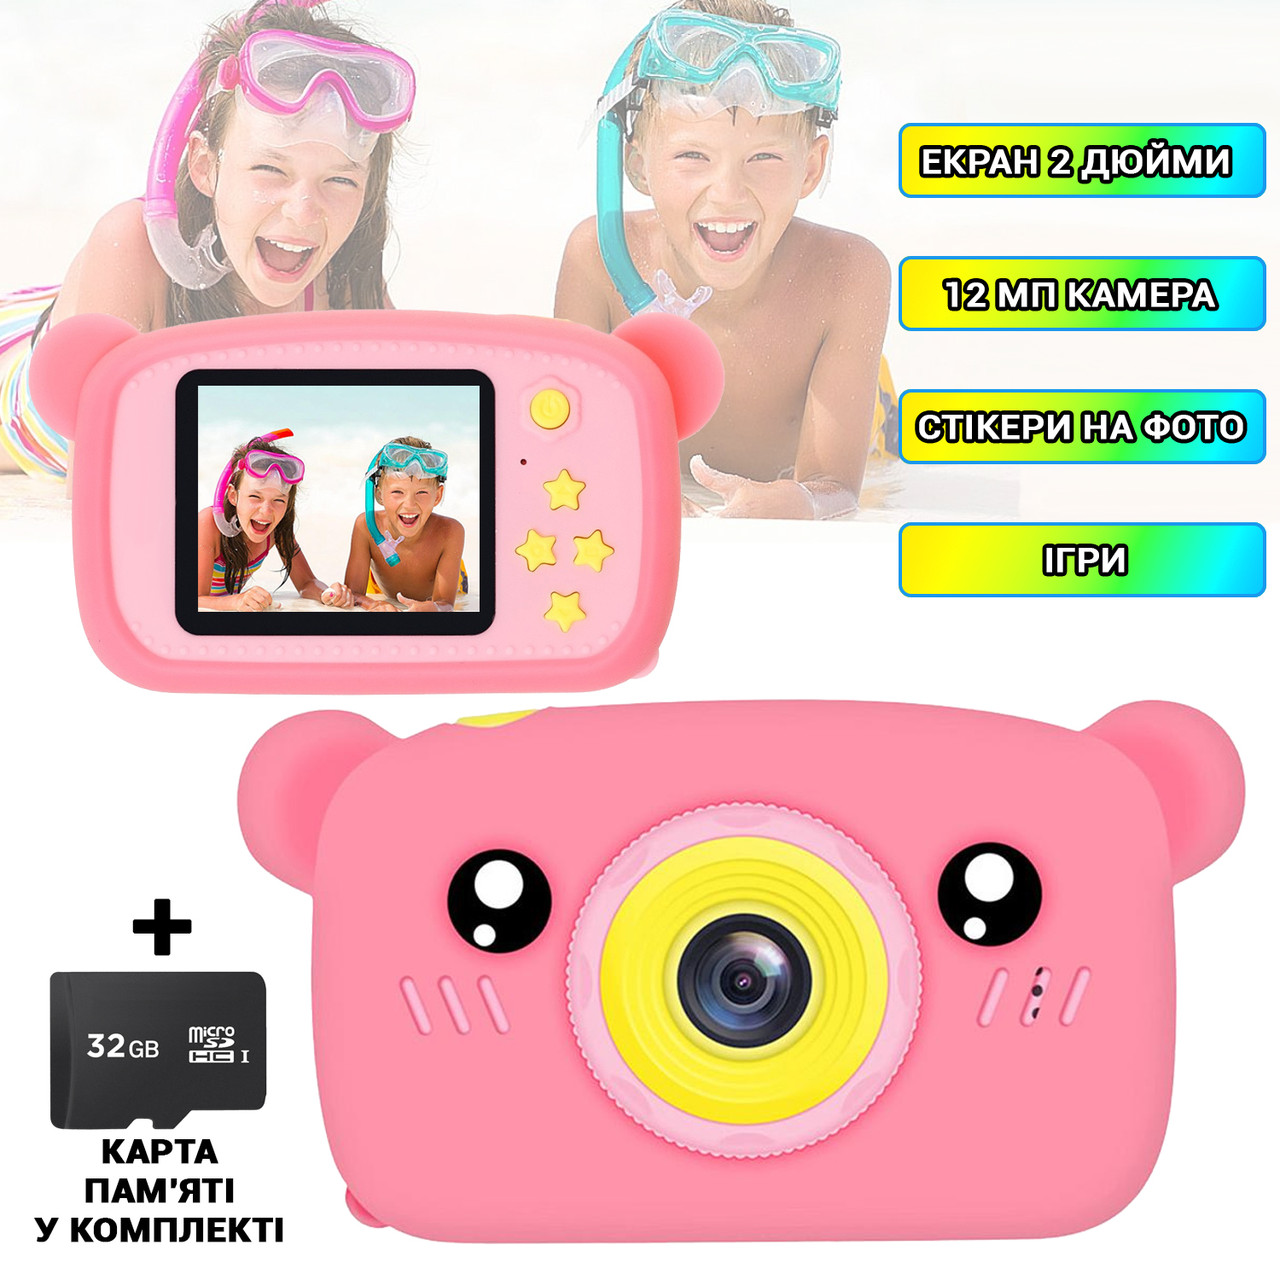 Дитячий цифровий фотоапарат Smart Kids KM-89 камера з іграми Ведмедик Teddy, 12МП Рожевий +MicroSD 32 ГБ